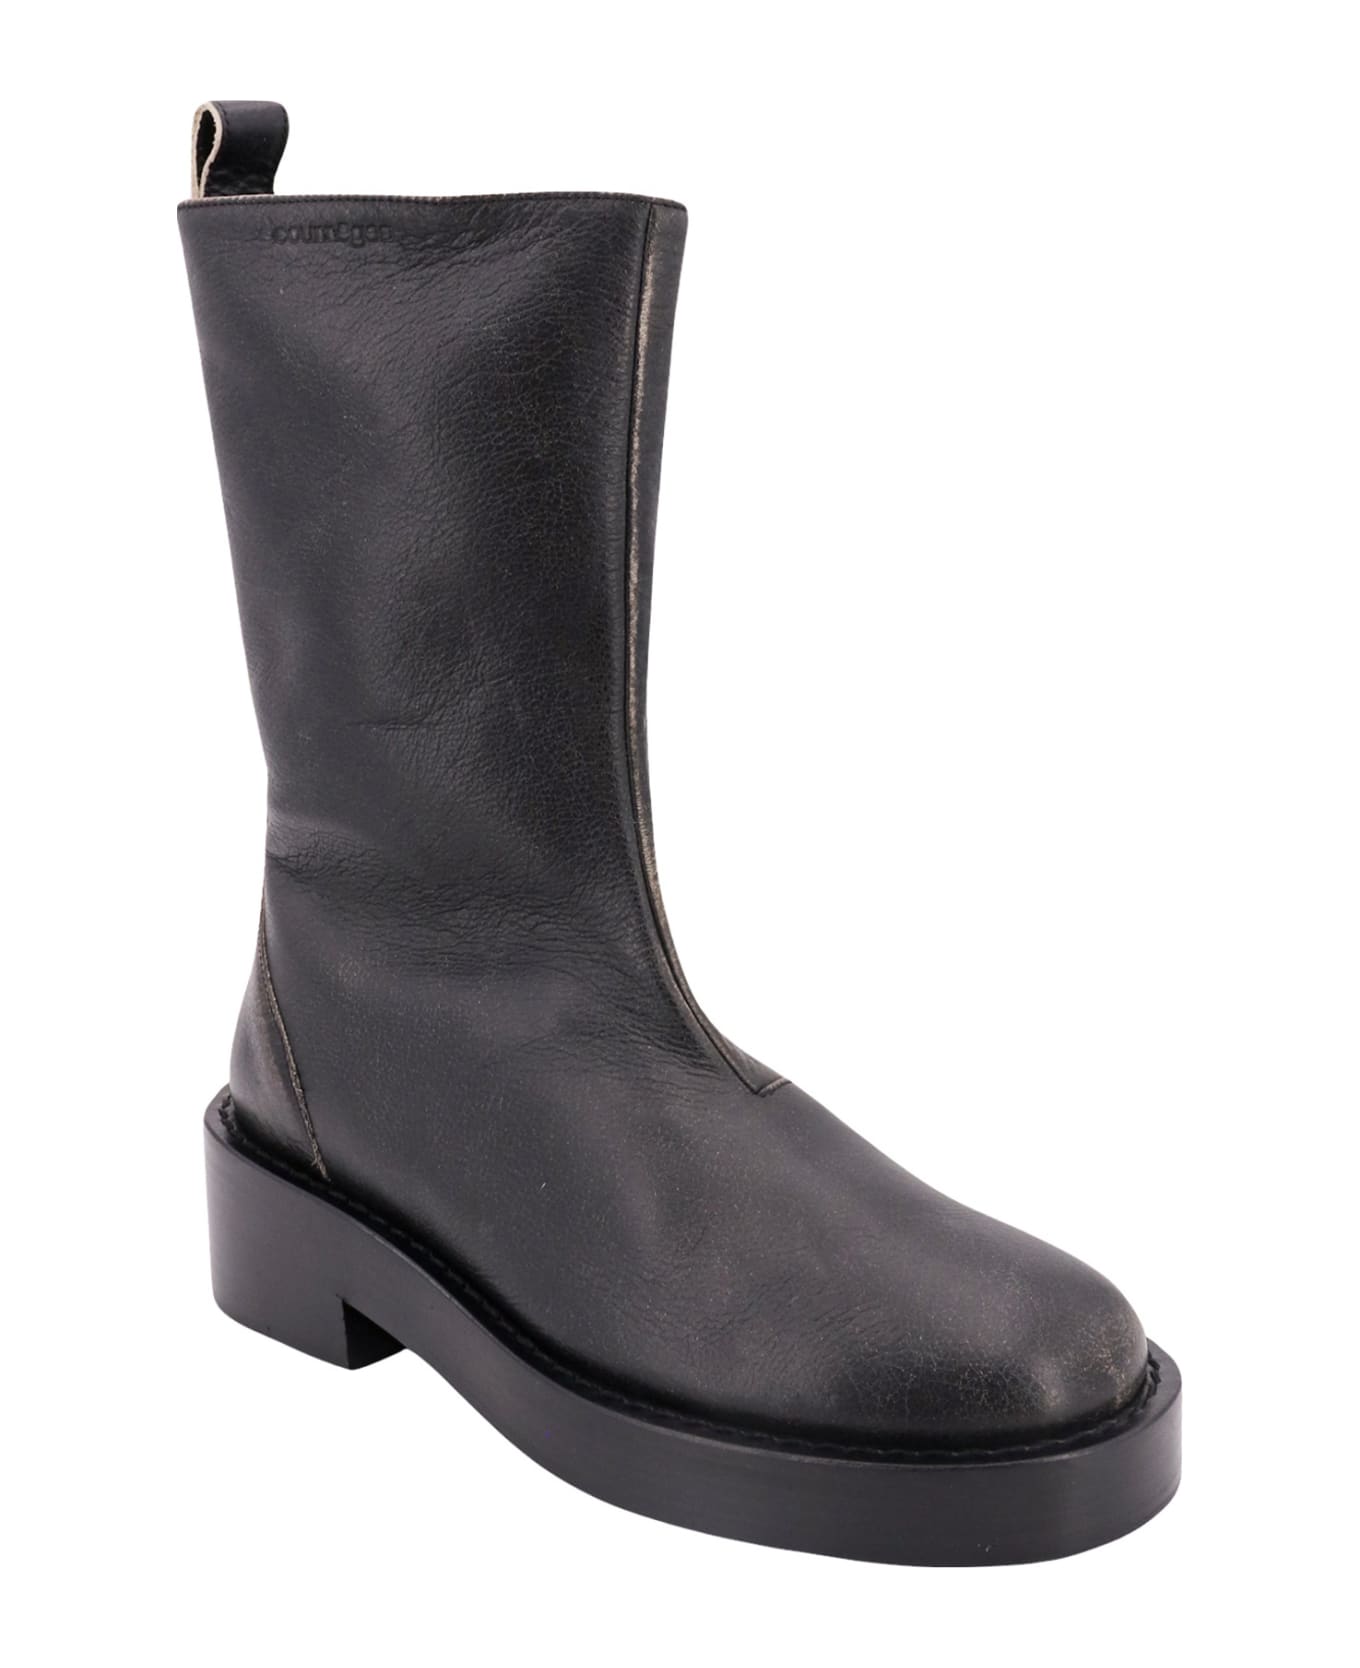 Courrèges Boots - Black ブーツ